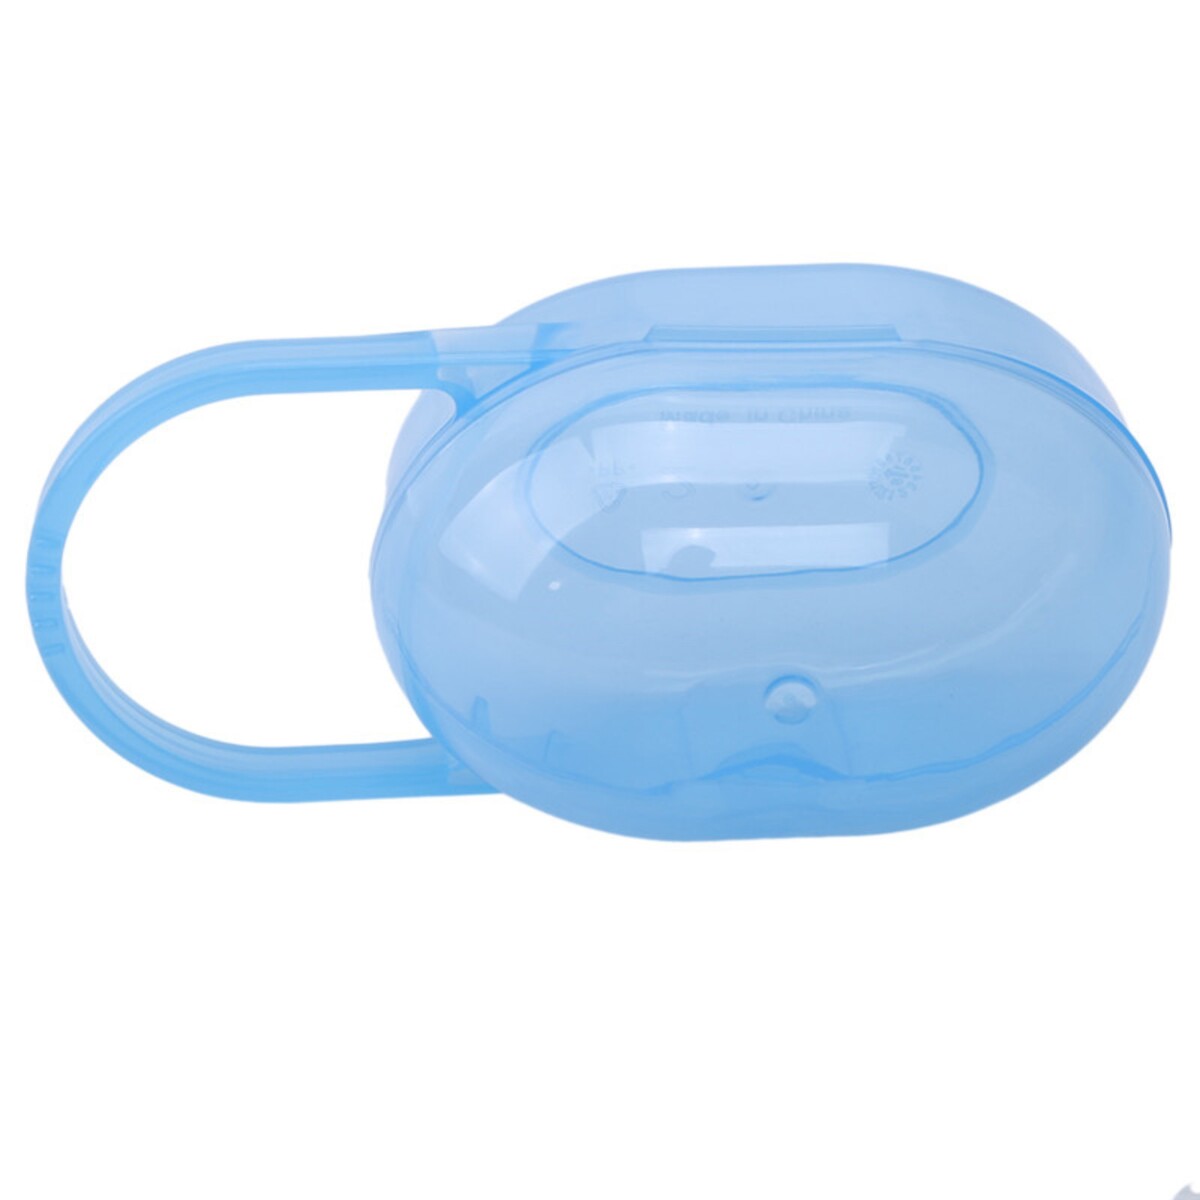 Контейнер для хранения и стерилизации детских сосок и пустышек, цвет синий контейнер стеклянный 370 мл smart solutions синий